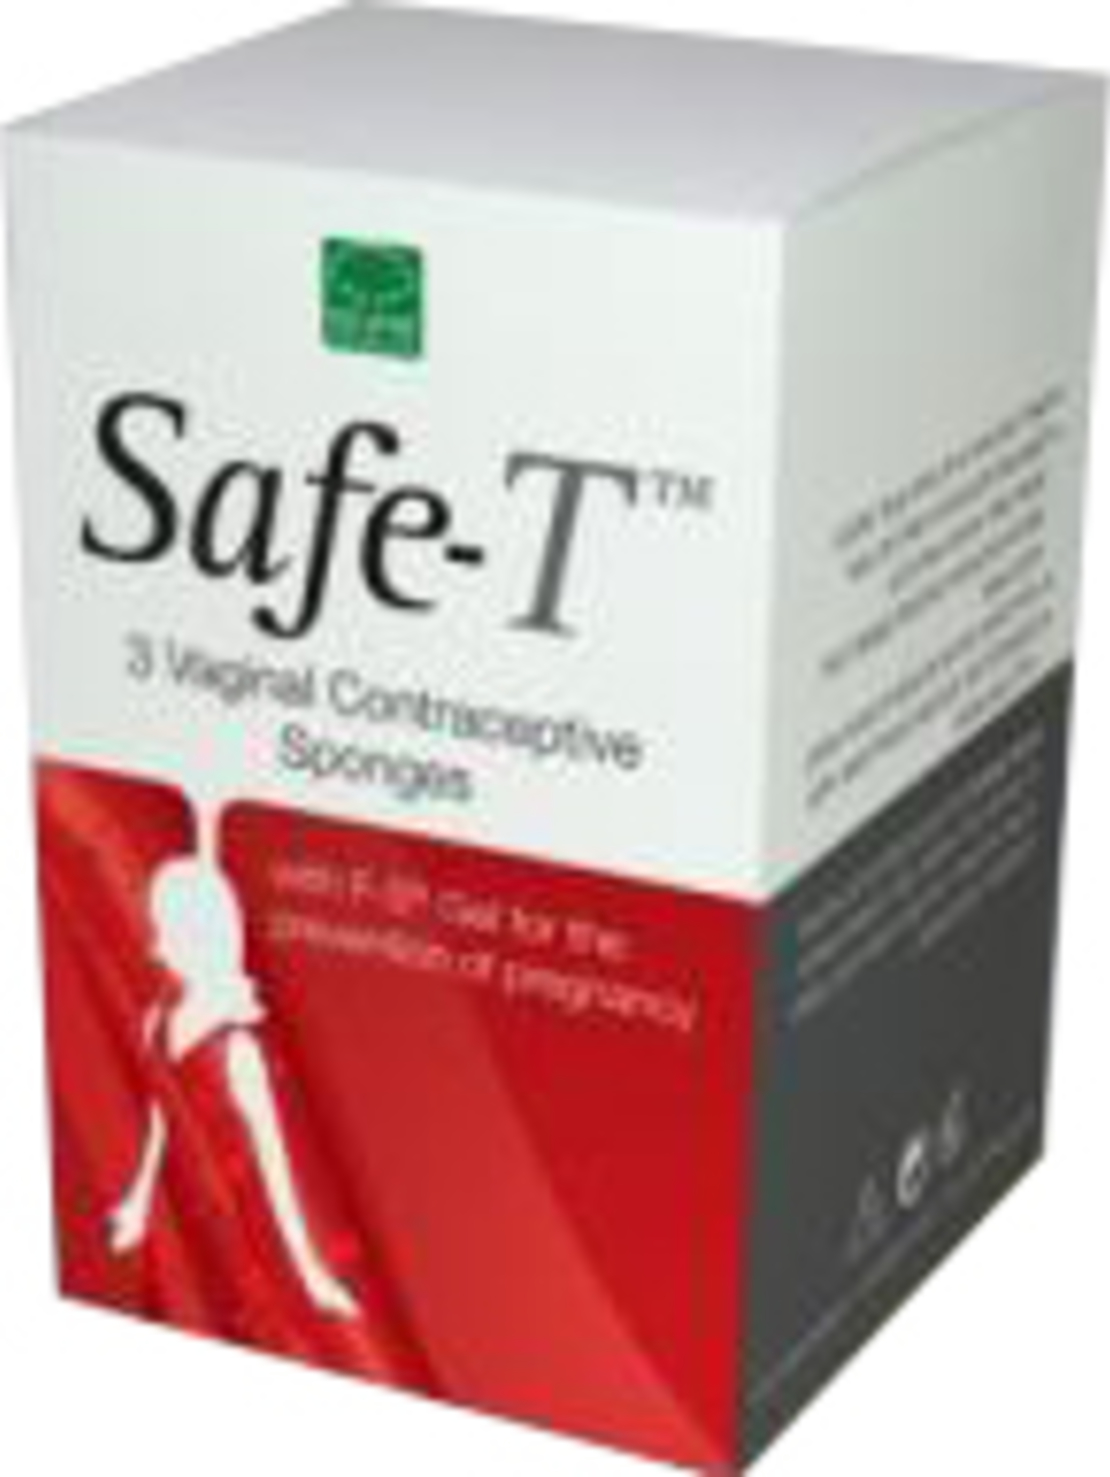 סייפ טי - ספוגית למניעת הריון Safe-T